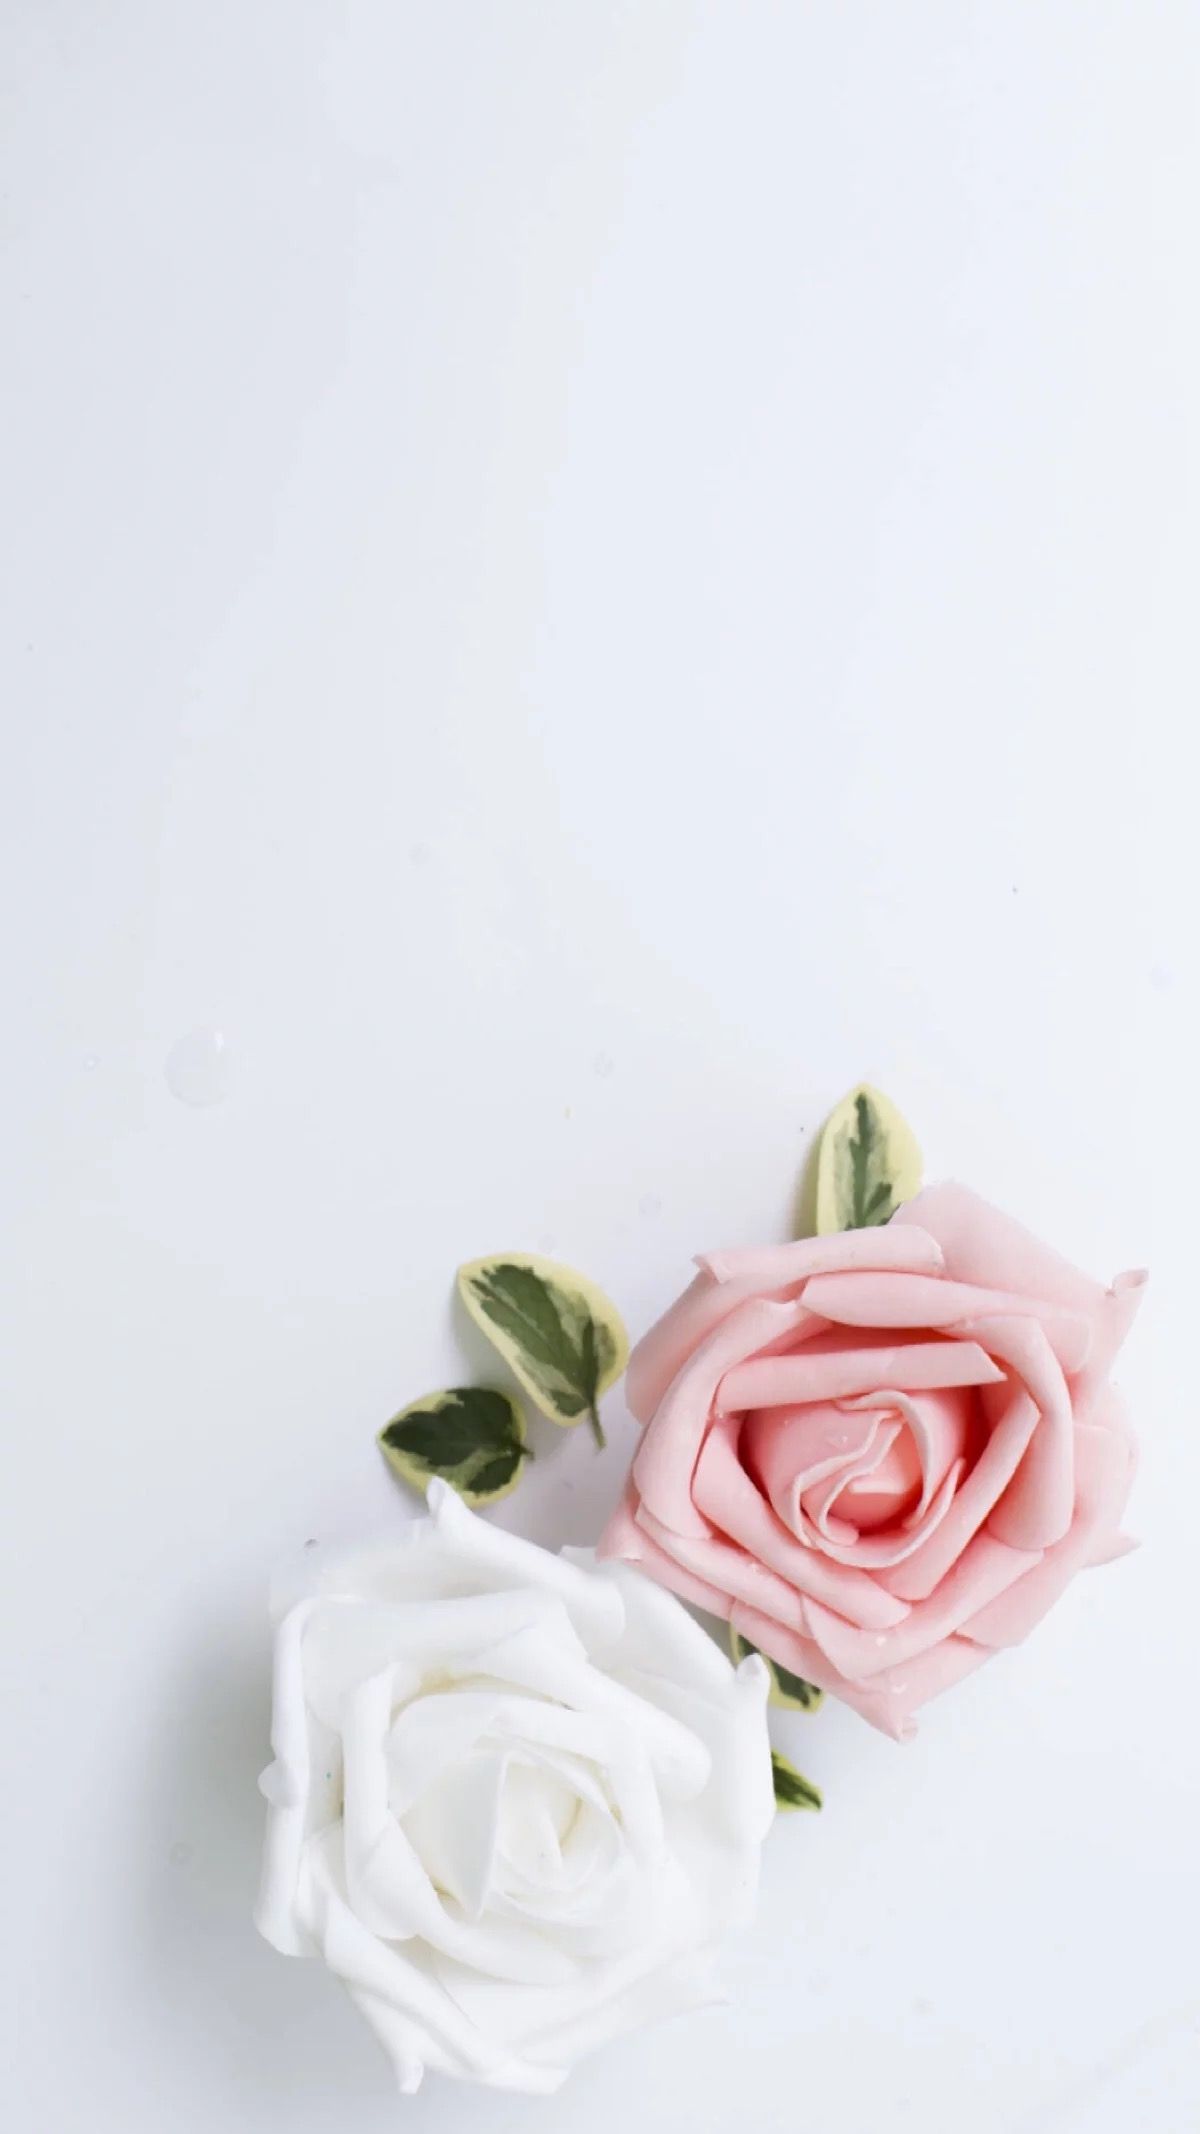 پس زمینه سفید با دو گل رز زیبا با رنگ صورتی و سفید و کیفیت HD